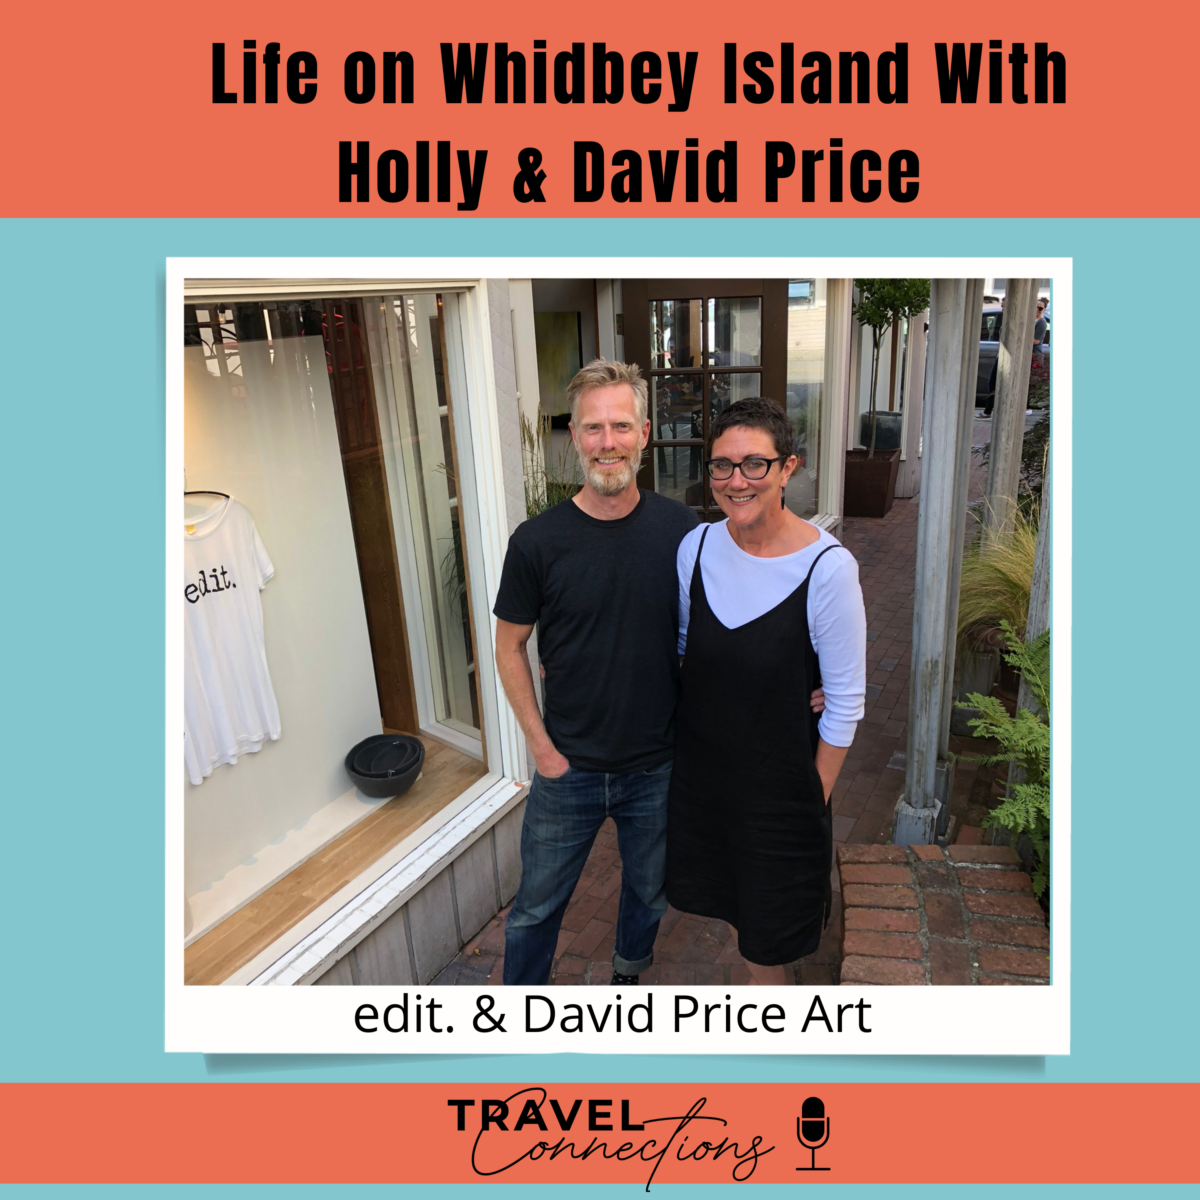 Life on Whidbey Island